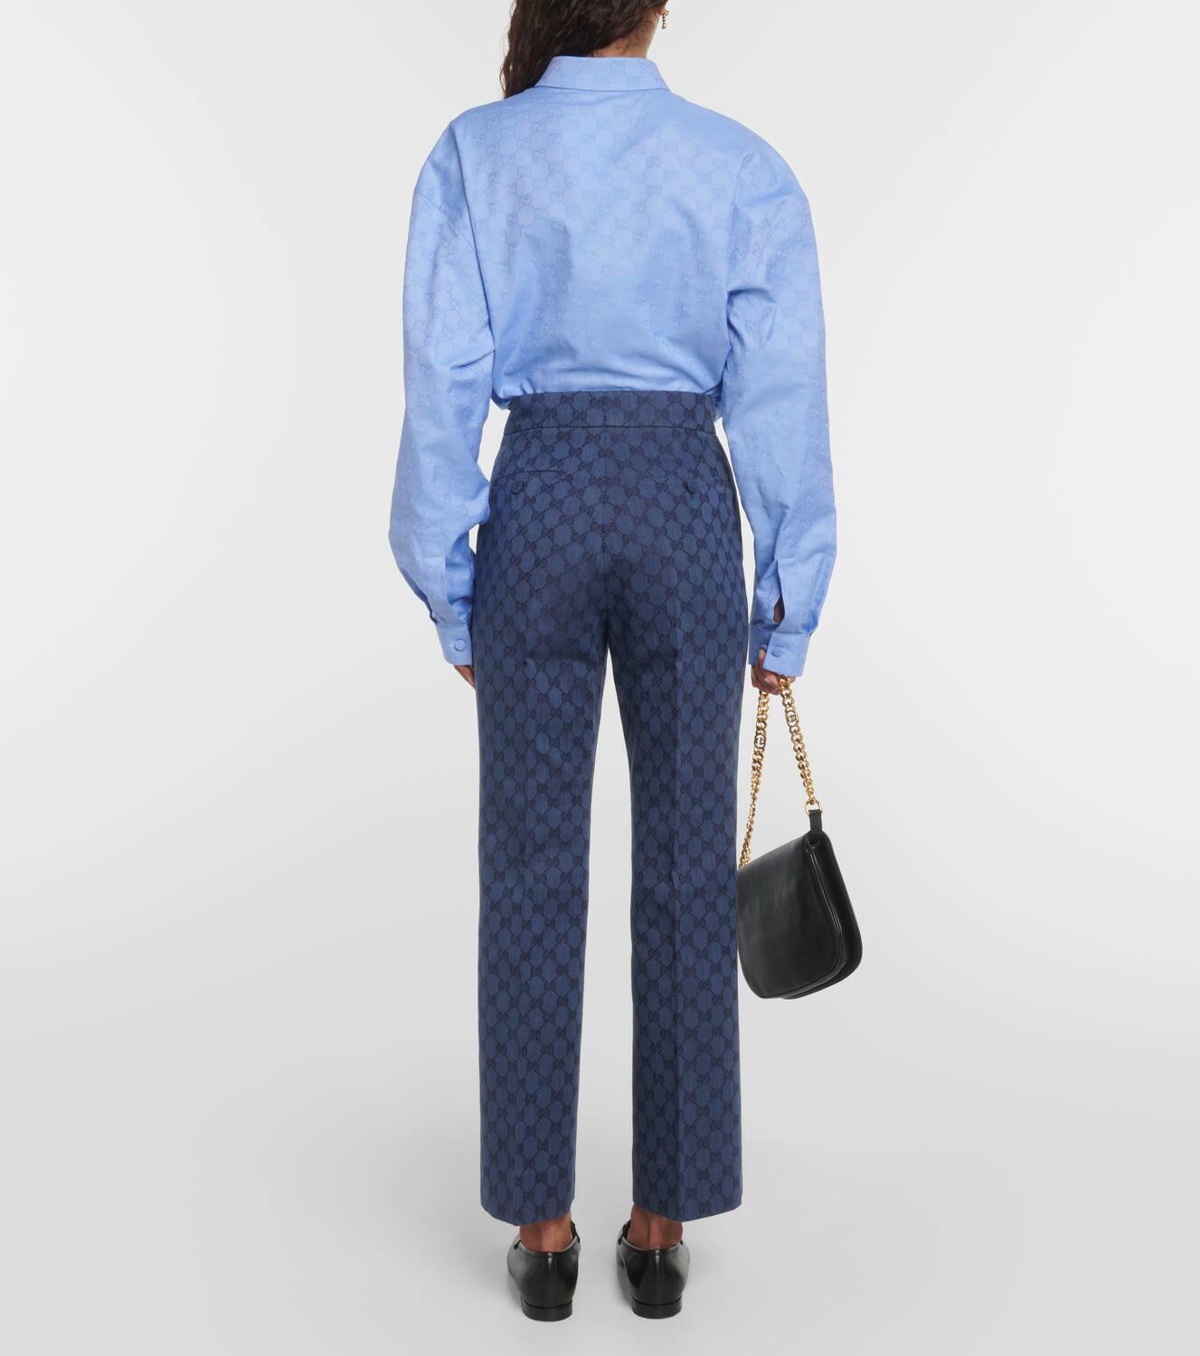 Blue GG-jacquard tie-waist linen shirt dress, Gucci